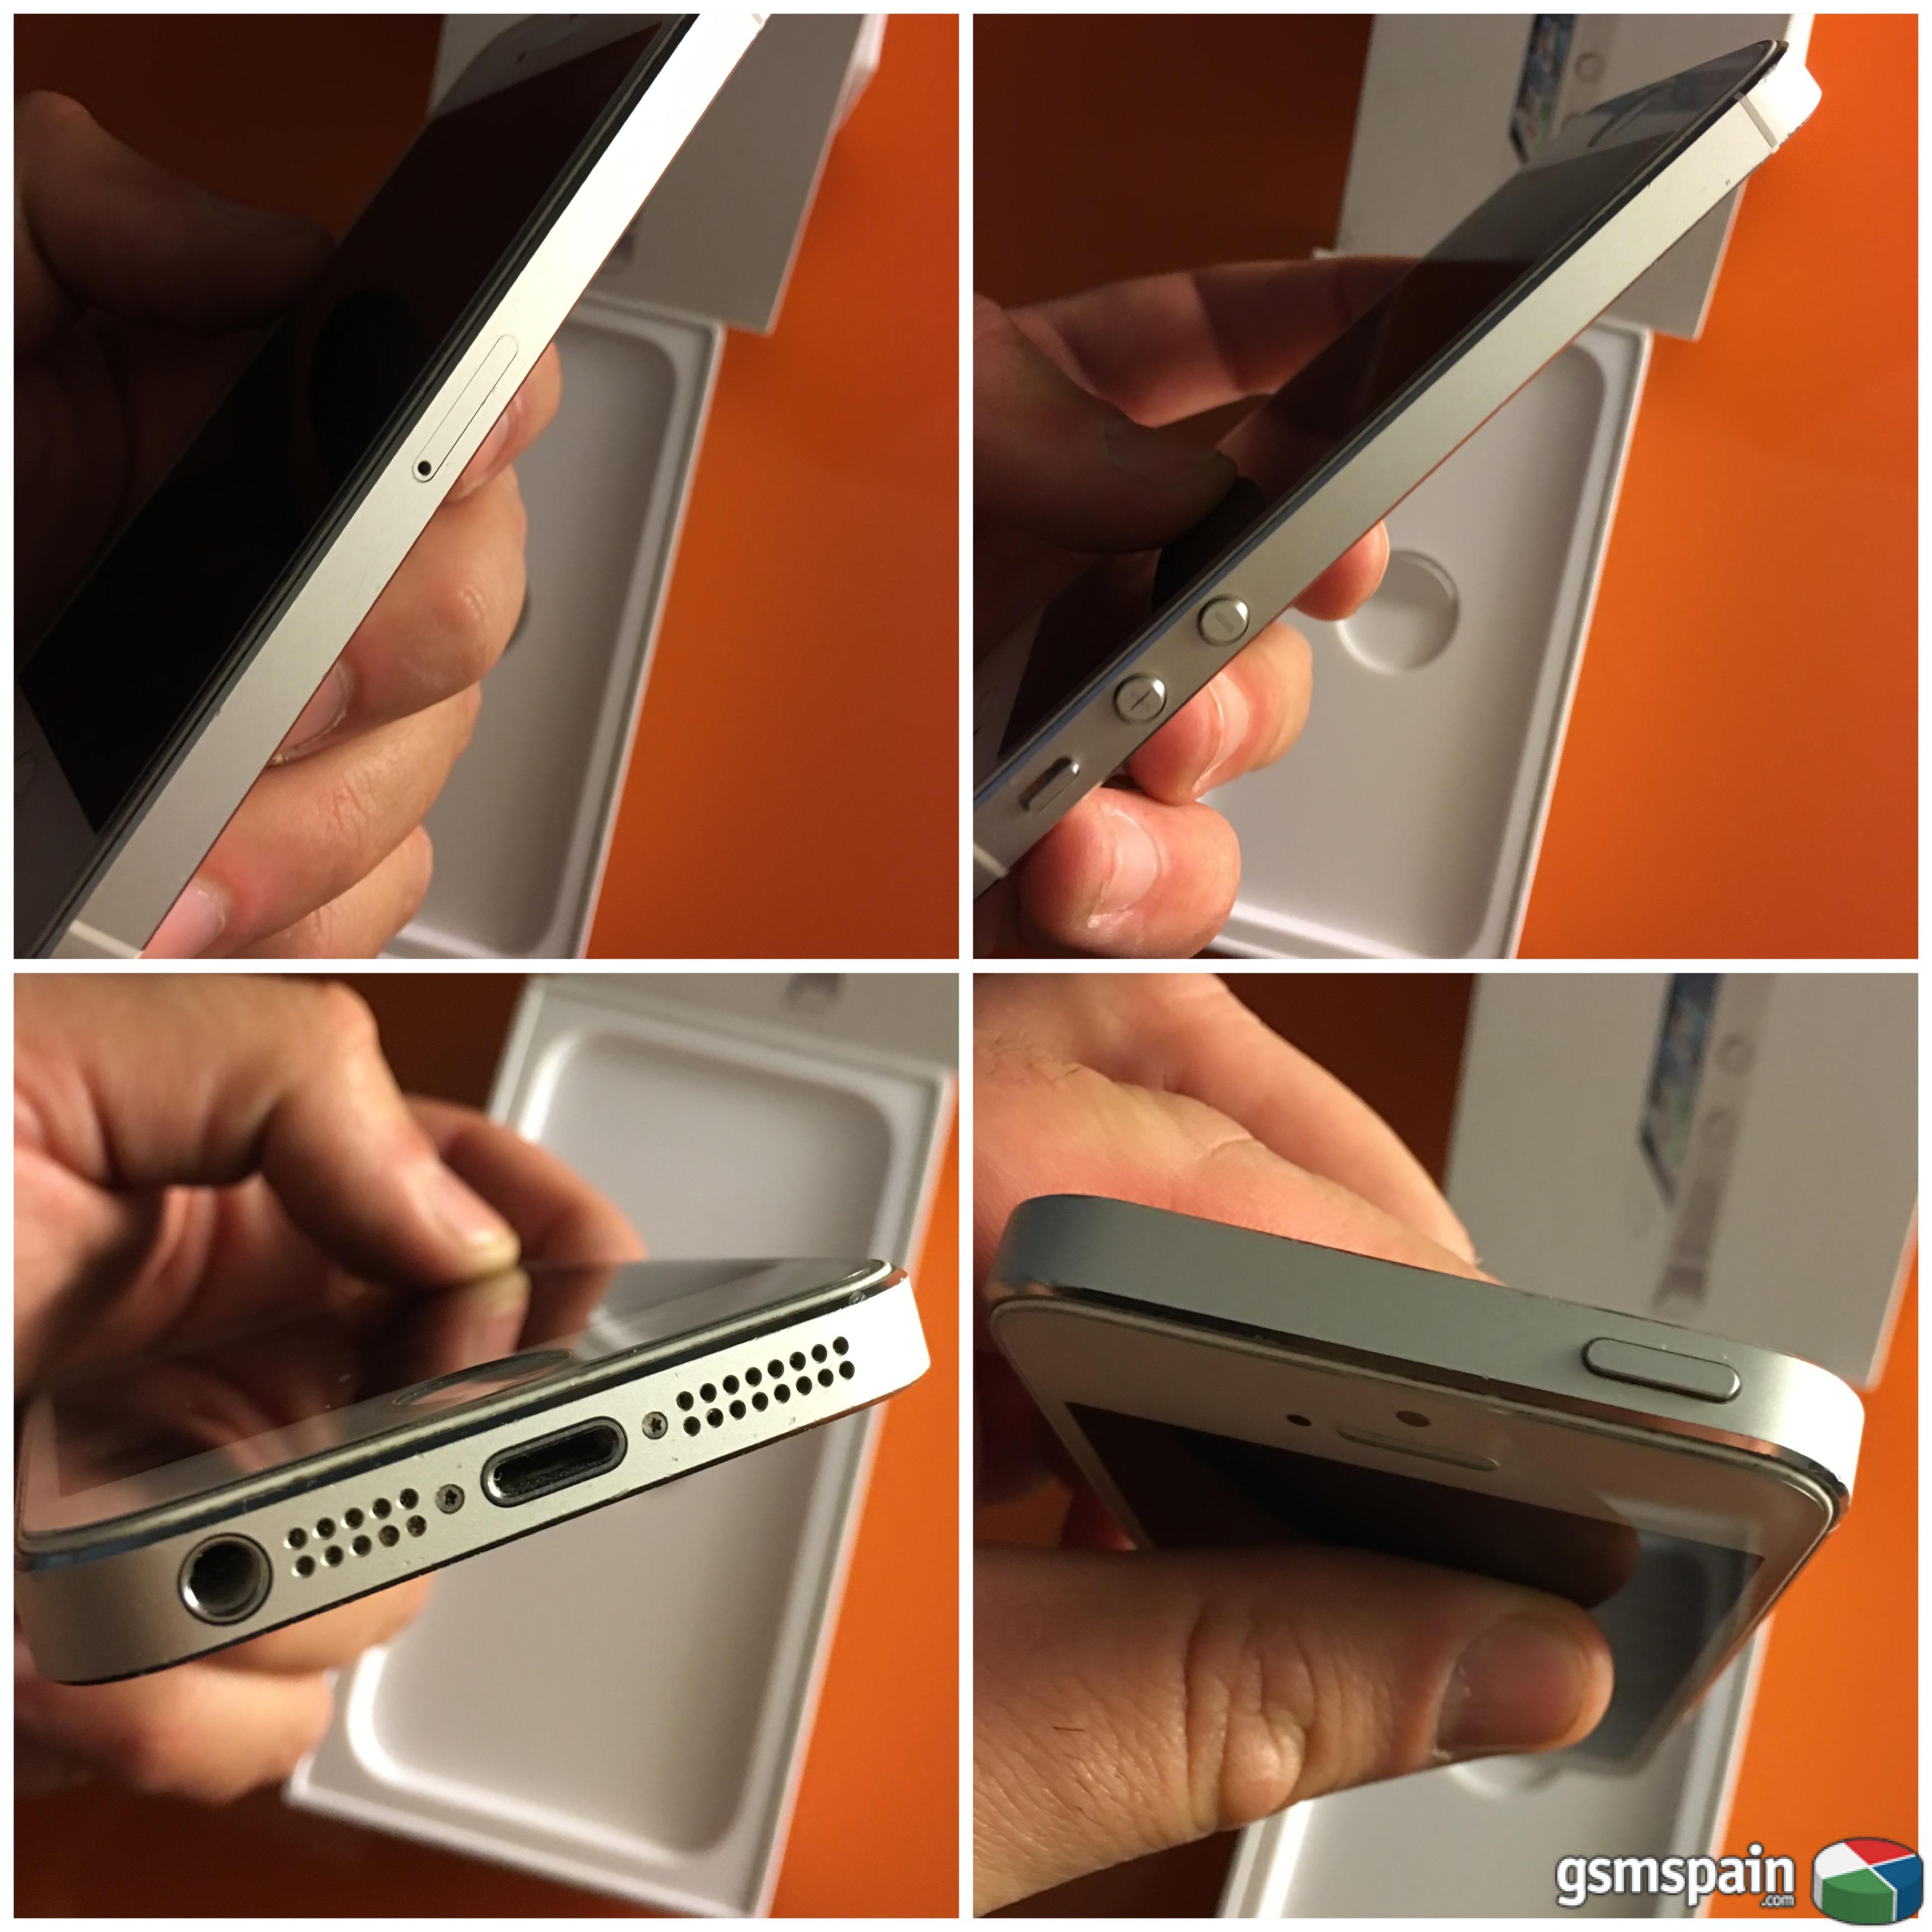 [VENDO] Iphone 5 plata 16 gb + lote de fundas (hitcase pro)